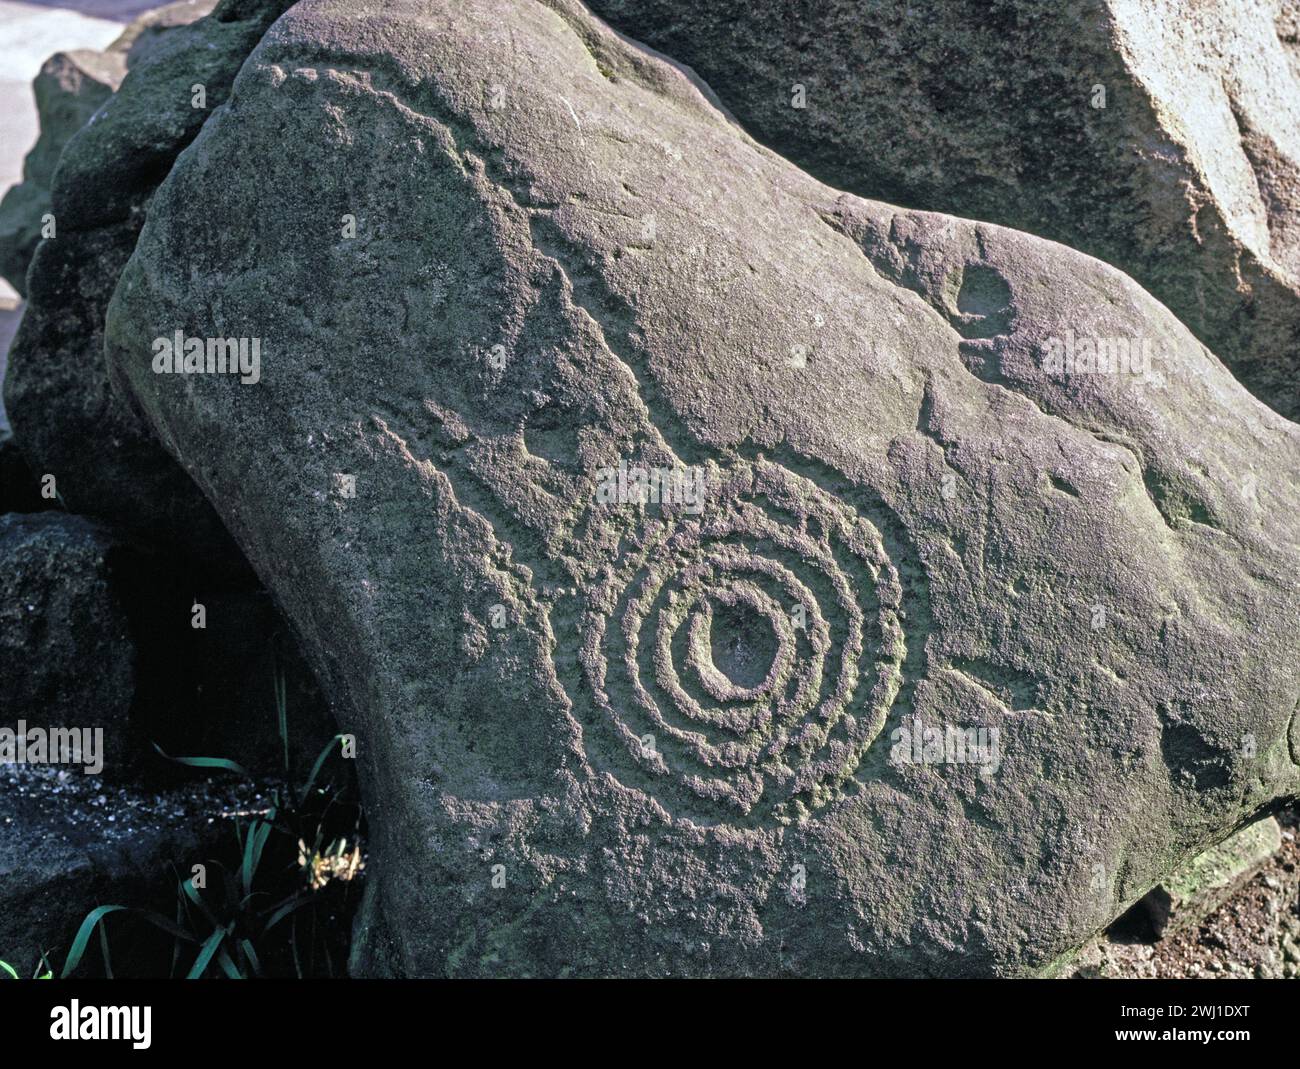 Hawaii. Ancien rocher parcouru Anneaux concentriques en pierre sculptée de pétroglyphe. Banque D'Images